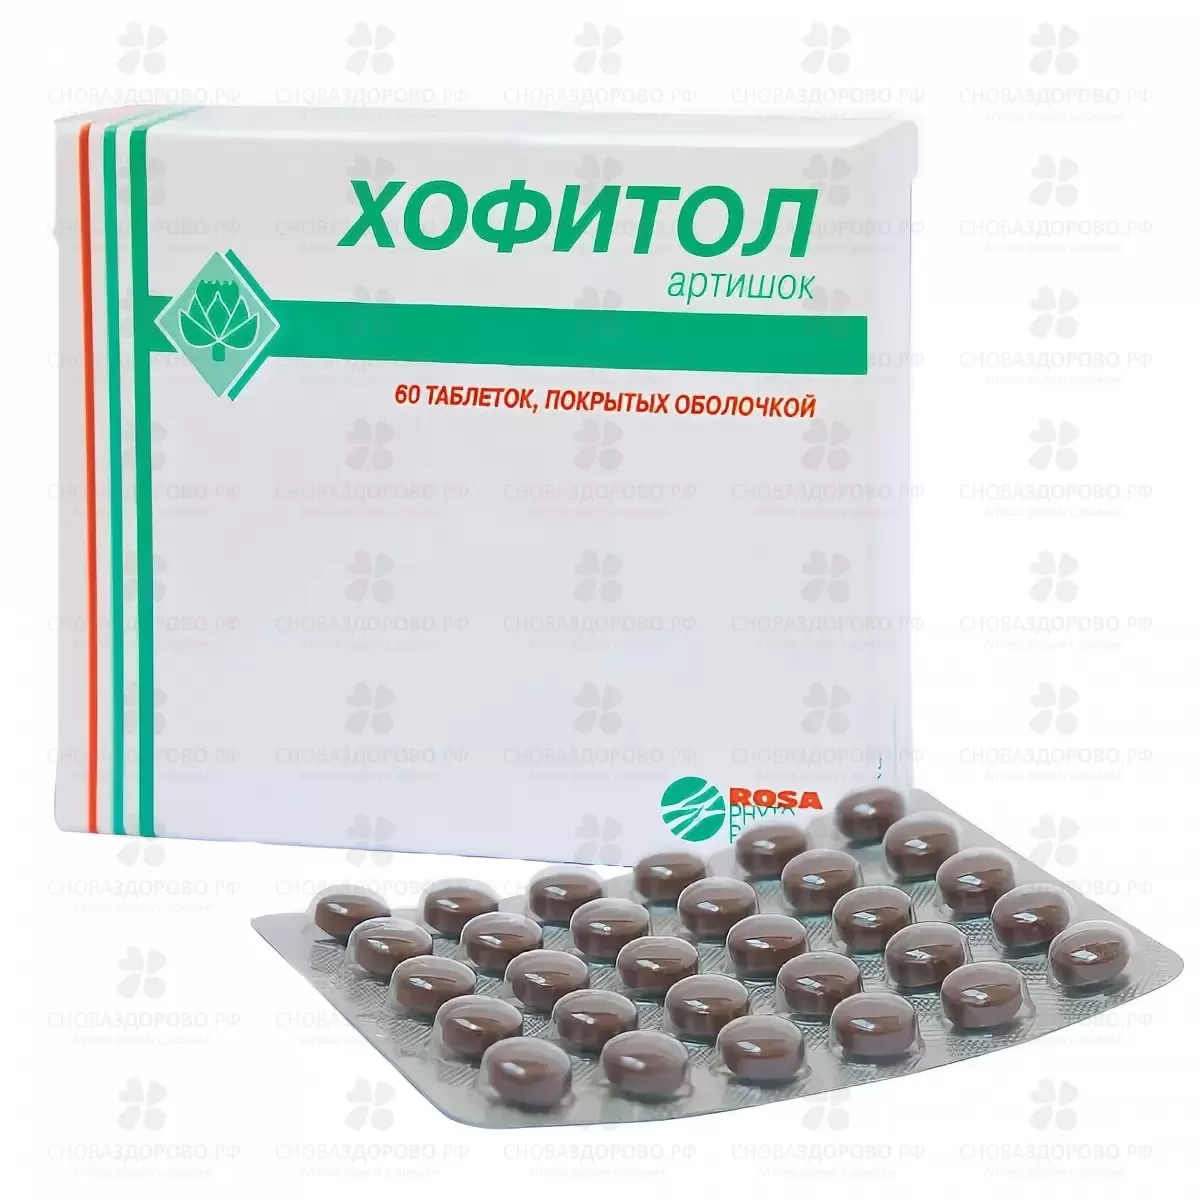 Недорогие таблетки для печени цена. Хофитол артишок Rosa. Хофитол (таб. N180 Вн ) Rosa-Phytopharm-Франция. Желчегонные препараты хофитол. Таблетки с артишоком хофитол.